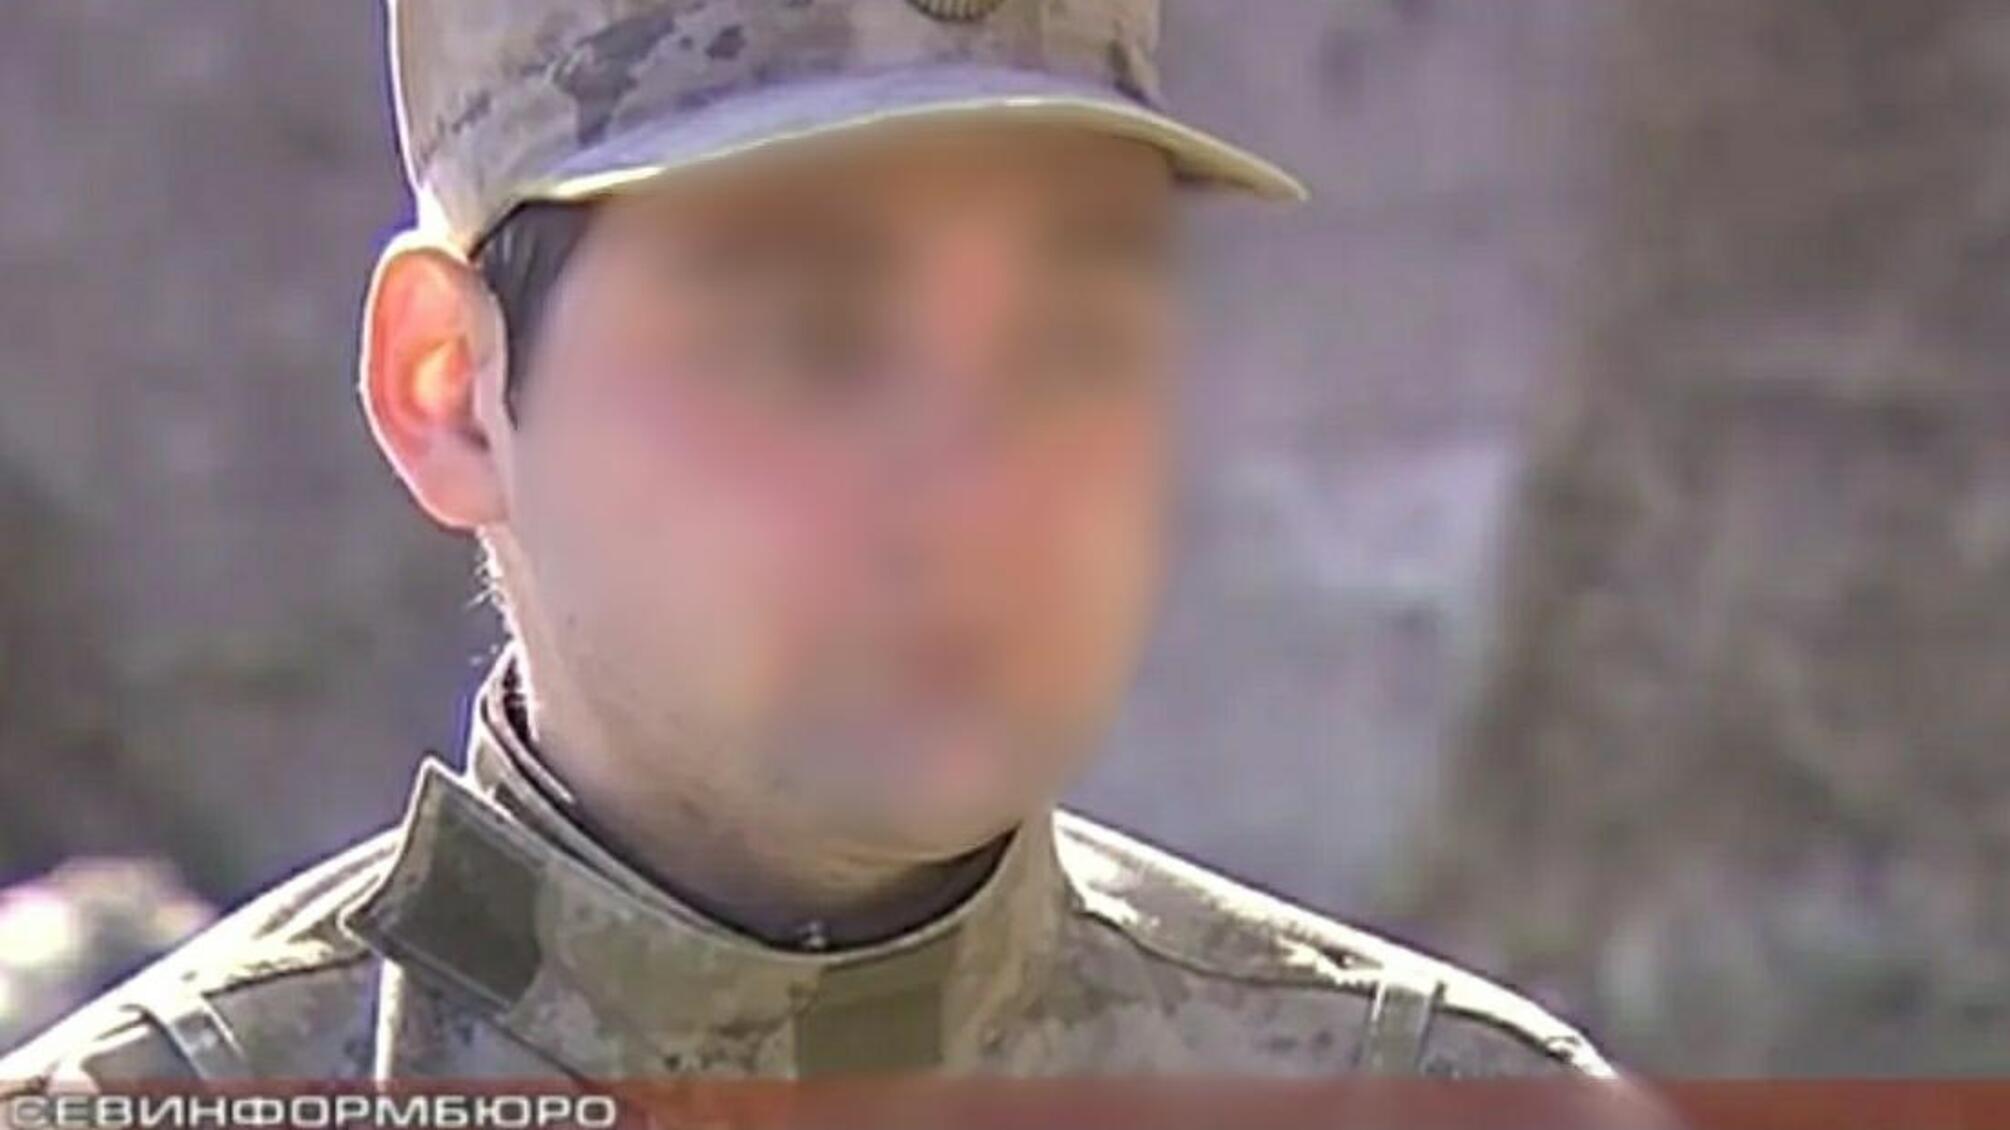 Поліцейські Криму повідомили про підозру учасникам незаконного збройного формування за активну участь у захопленні Штабу ВМС України